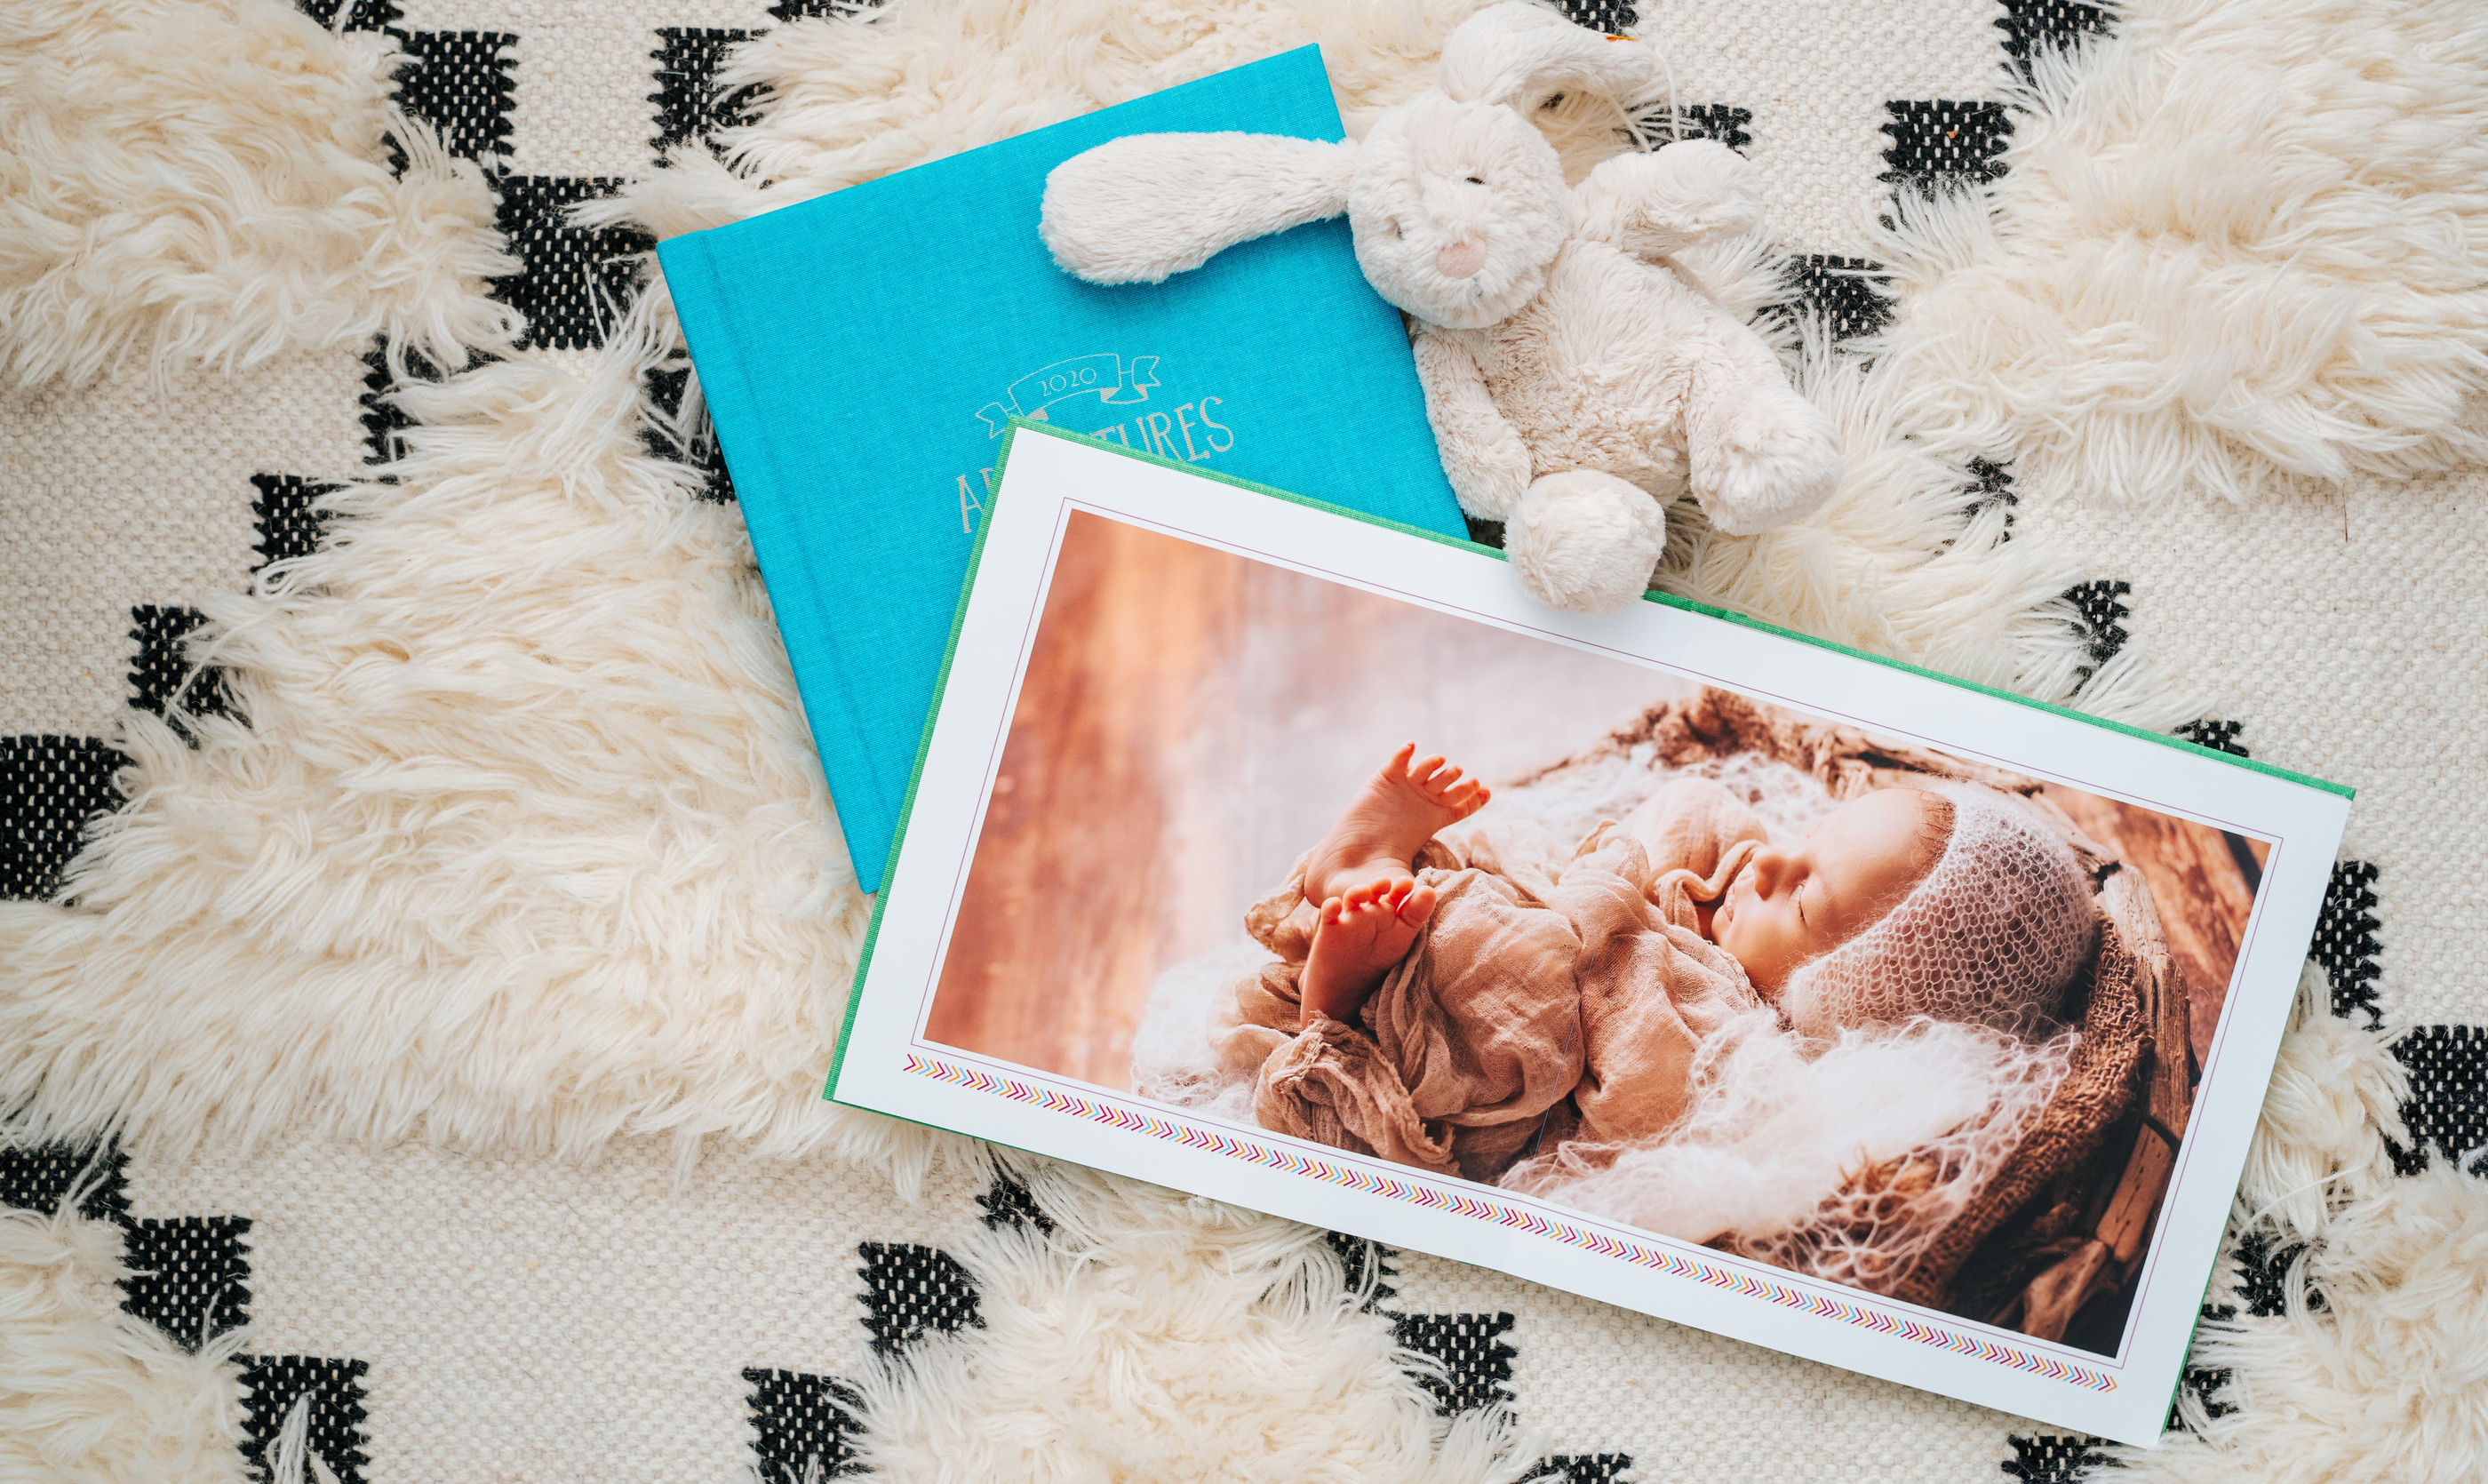 Hochwertiges Baby Fotoabuch mit dicken Echtfoto Seiten